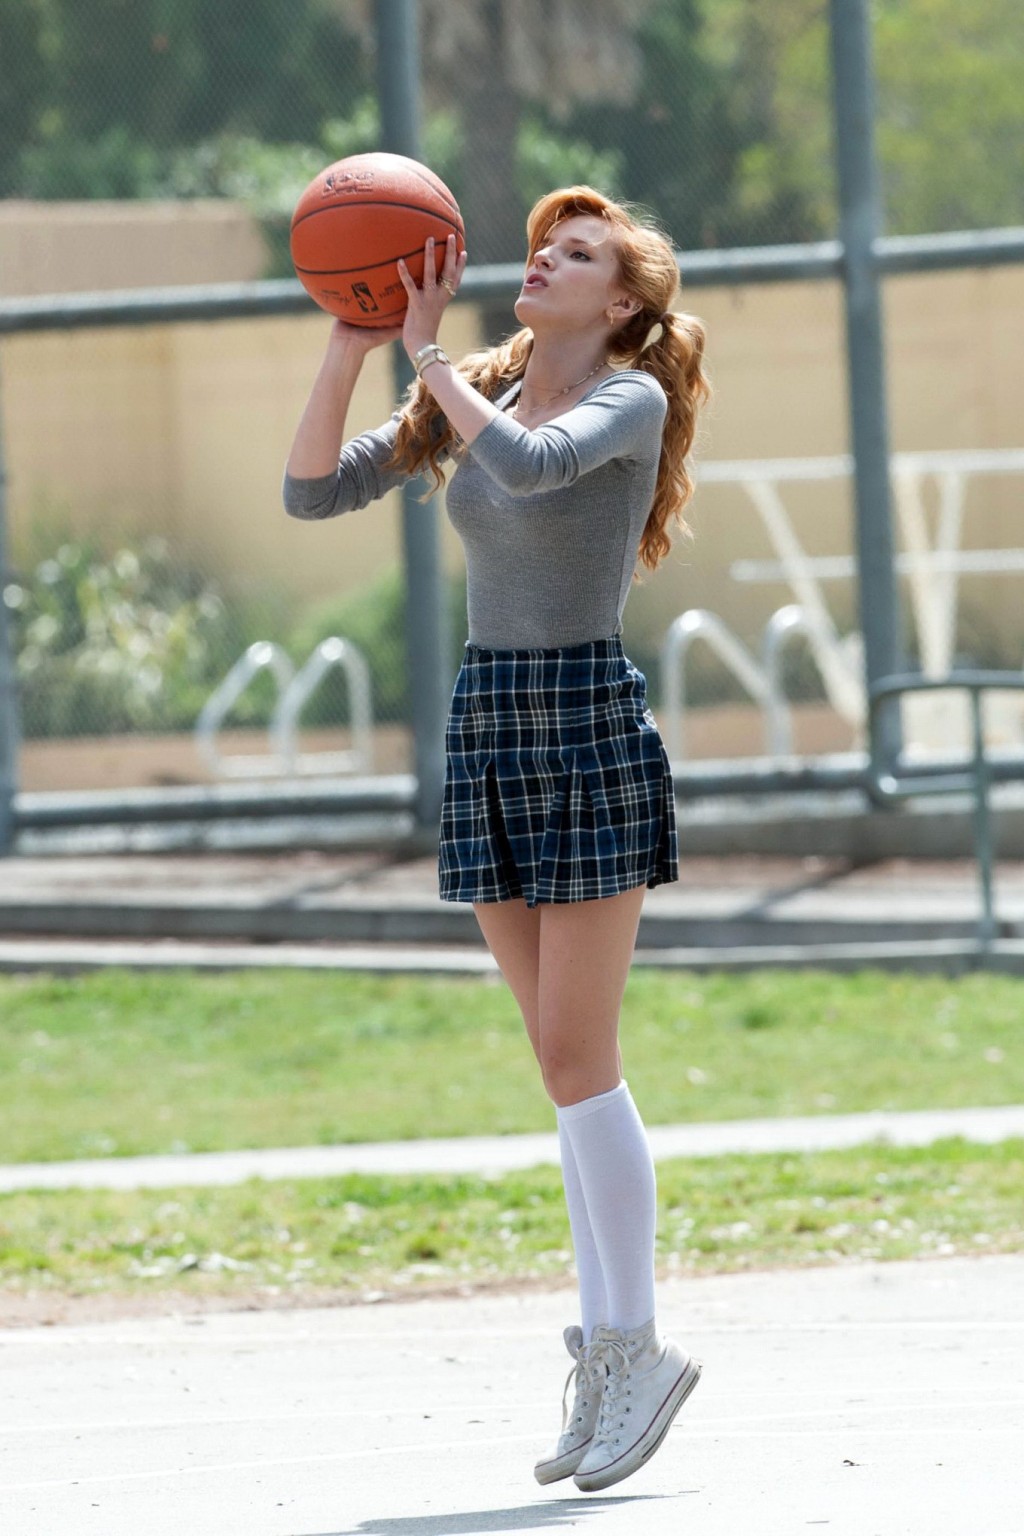 ベラ・ソーン、「Most ghos」の撮影で女子高生姿でバスケをする
 #75200737